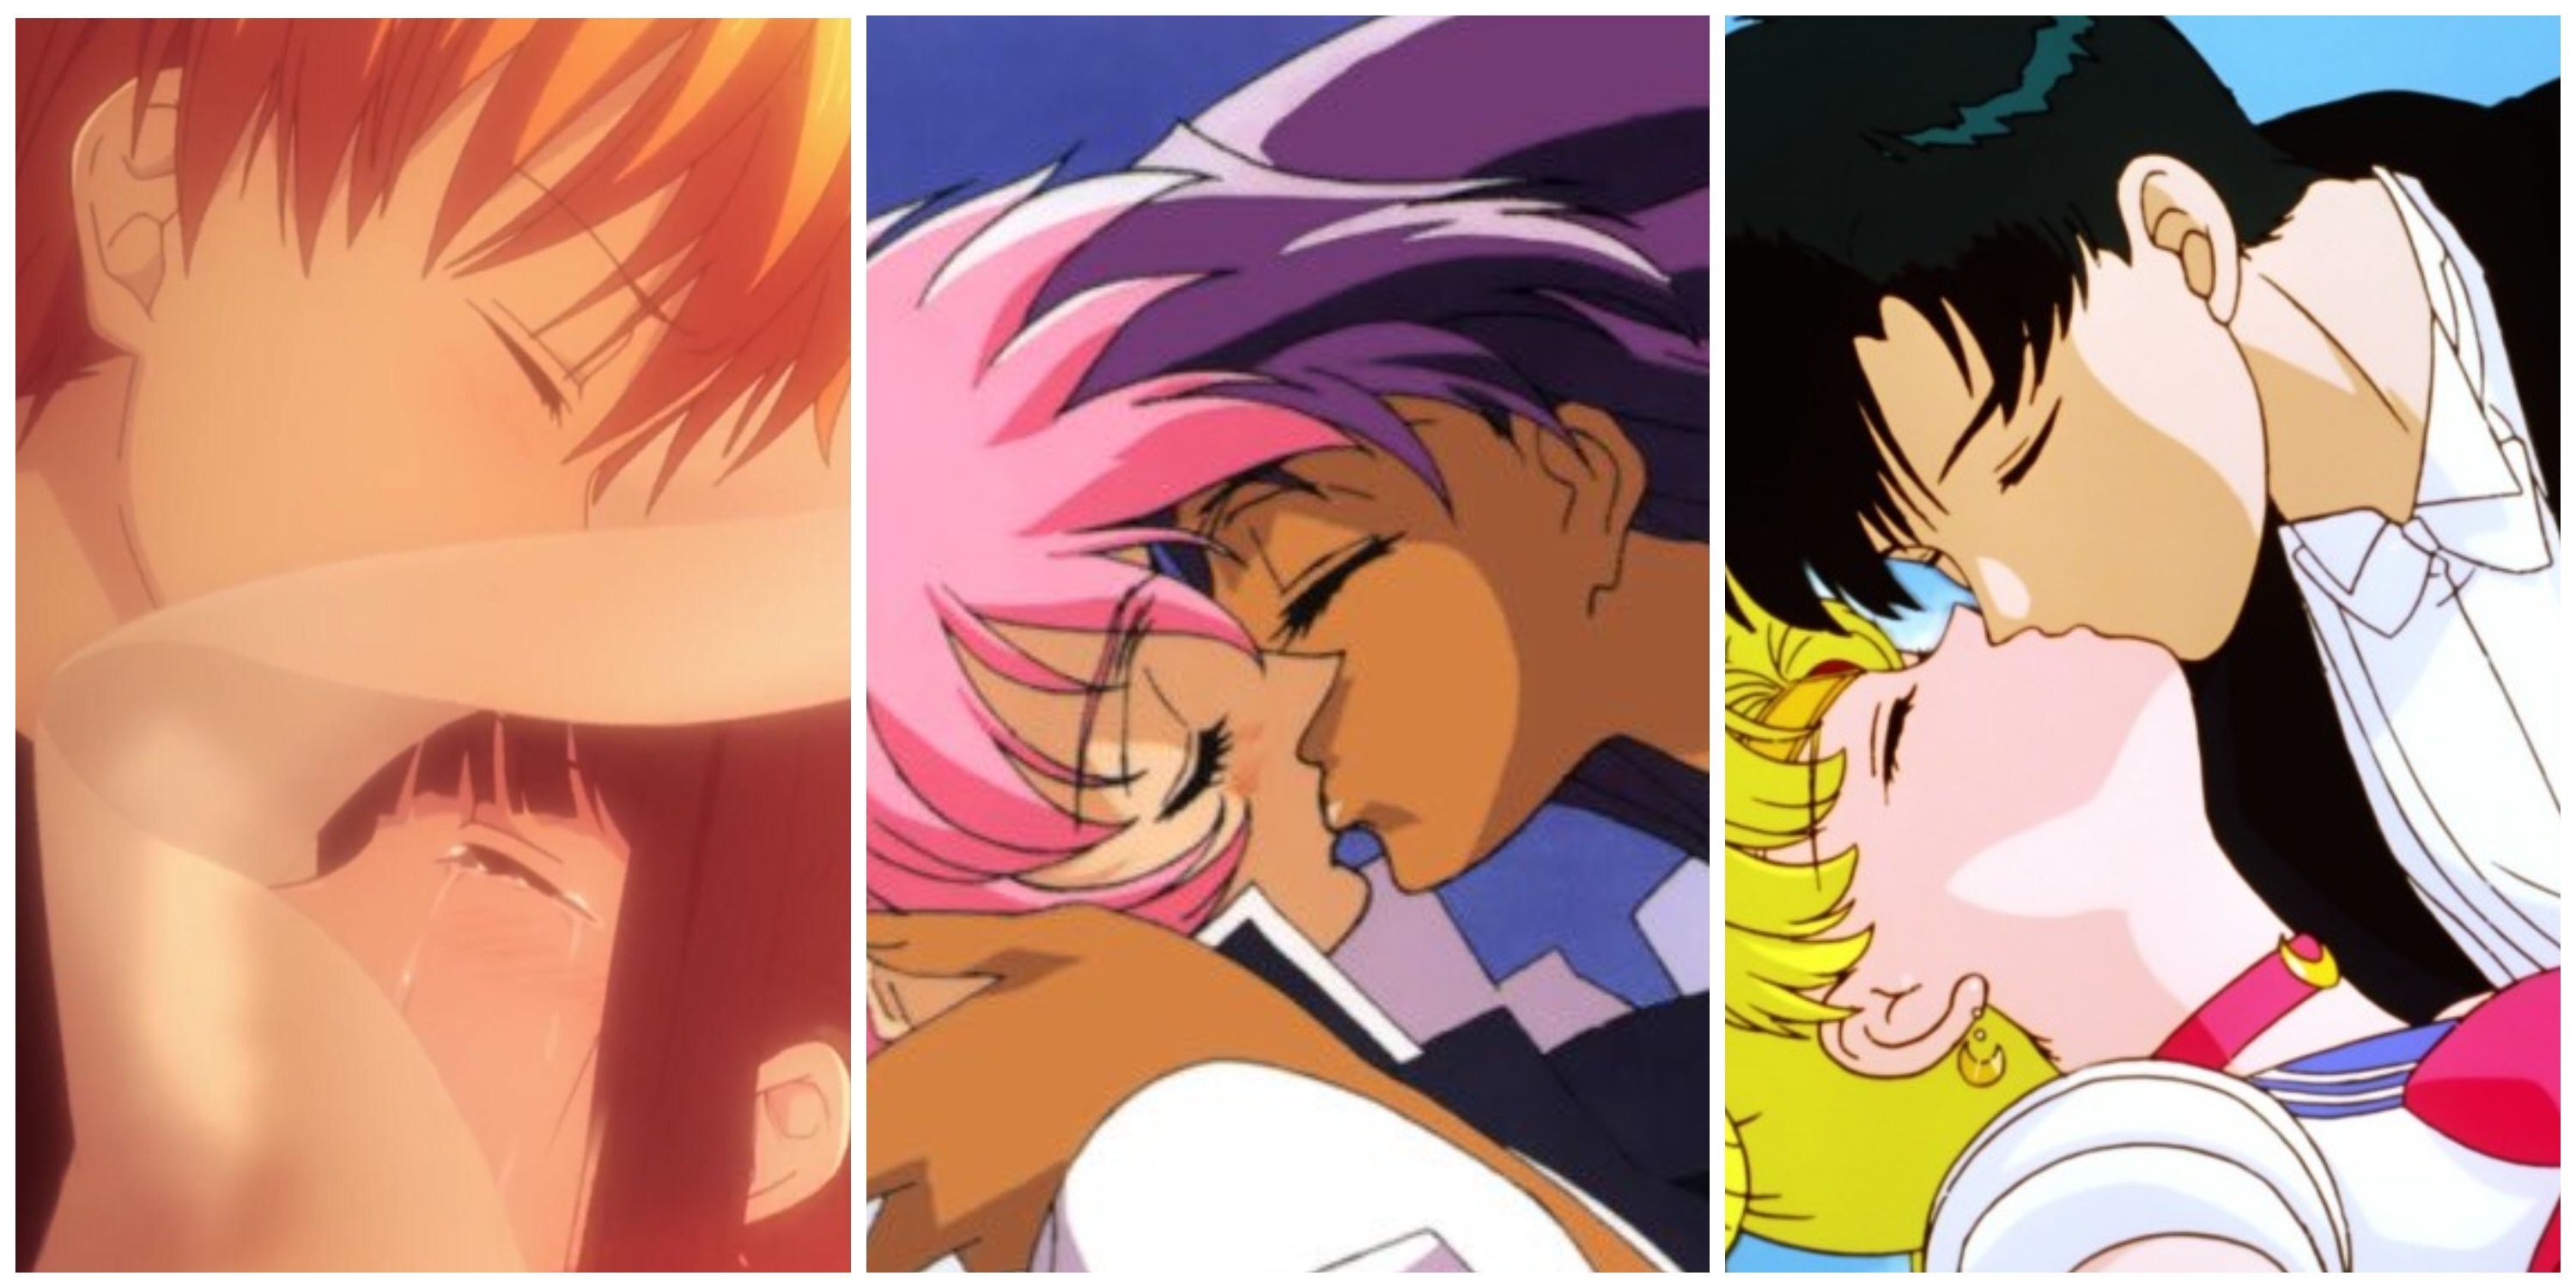 brianna summers share romance anime kiss scenes photos